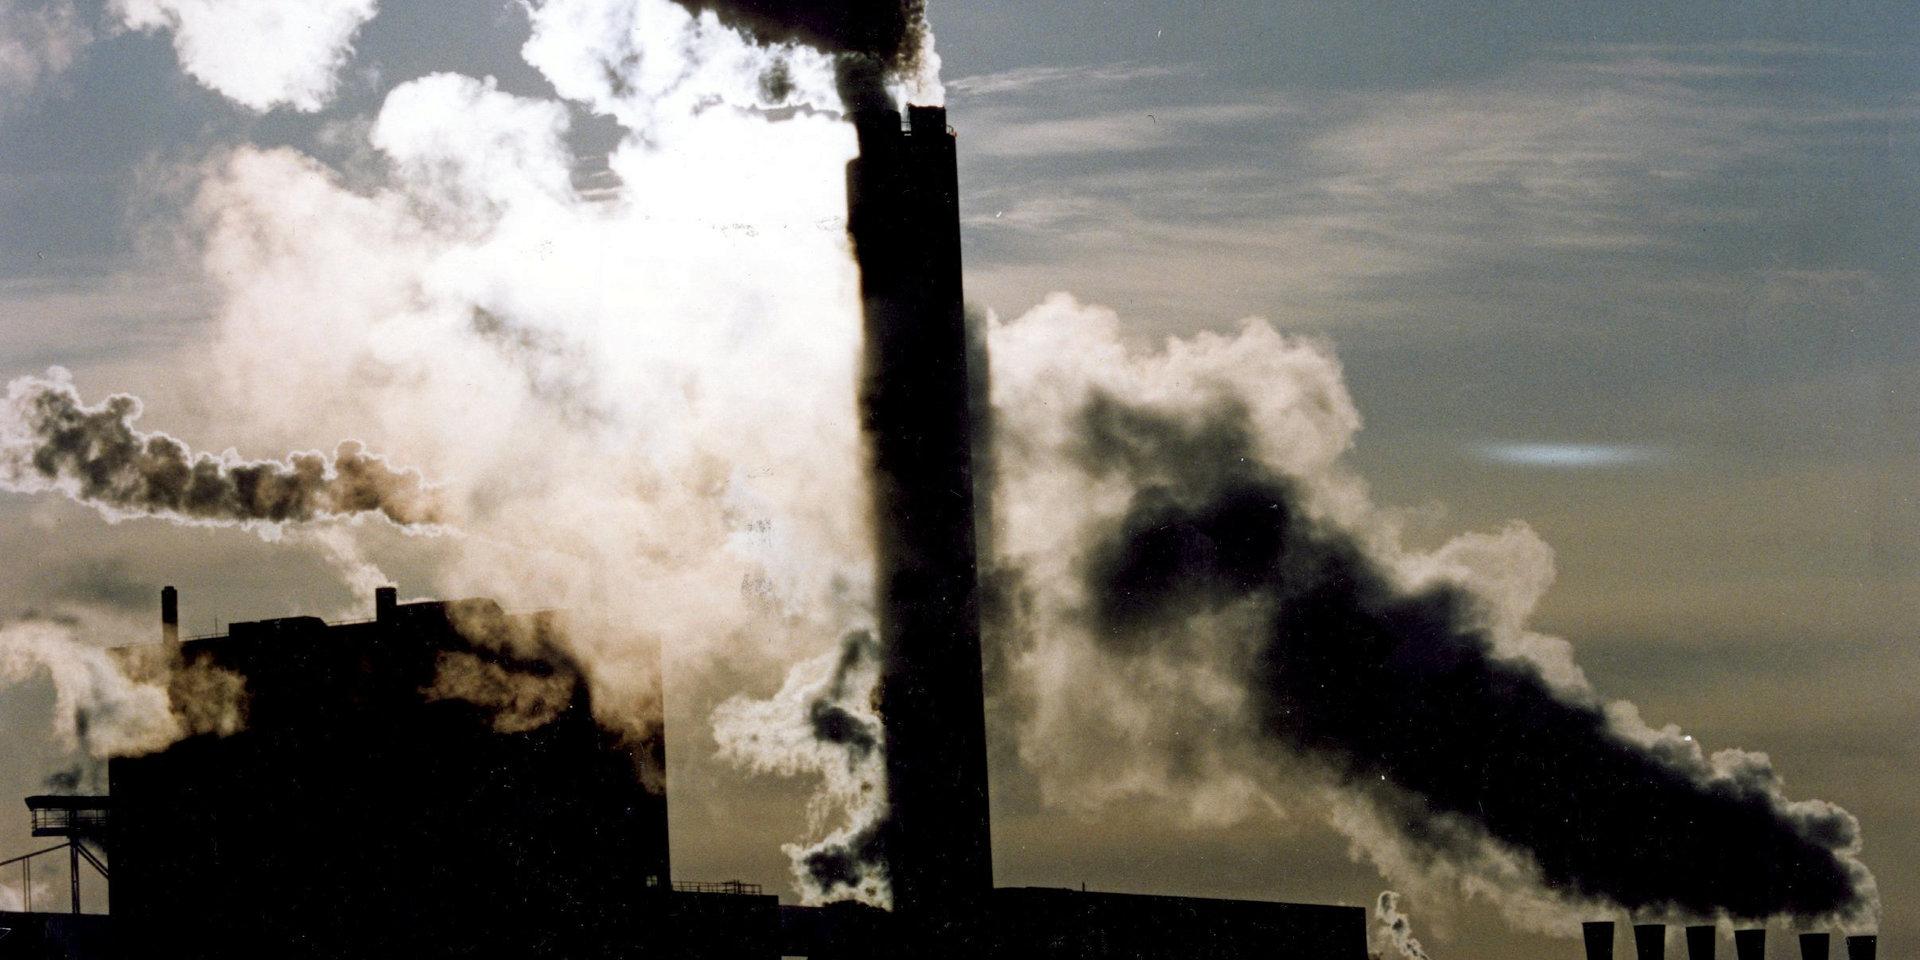 Totalt dör nio miljoner årligen av fossila bränslen, uttrycker debattören.